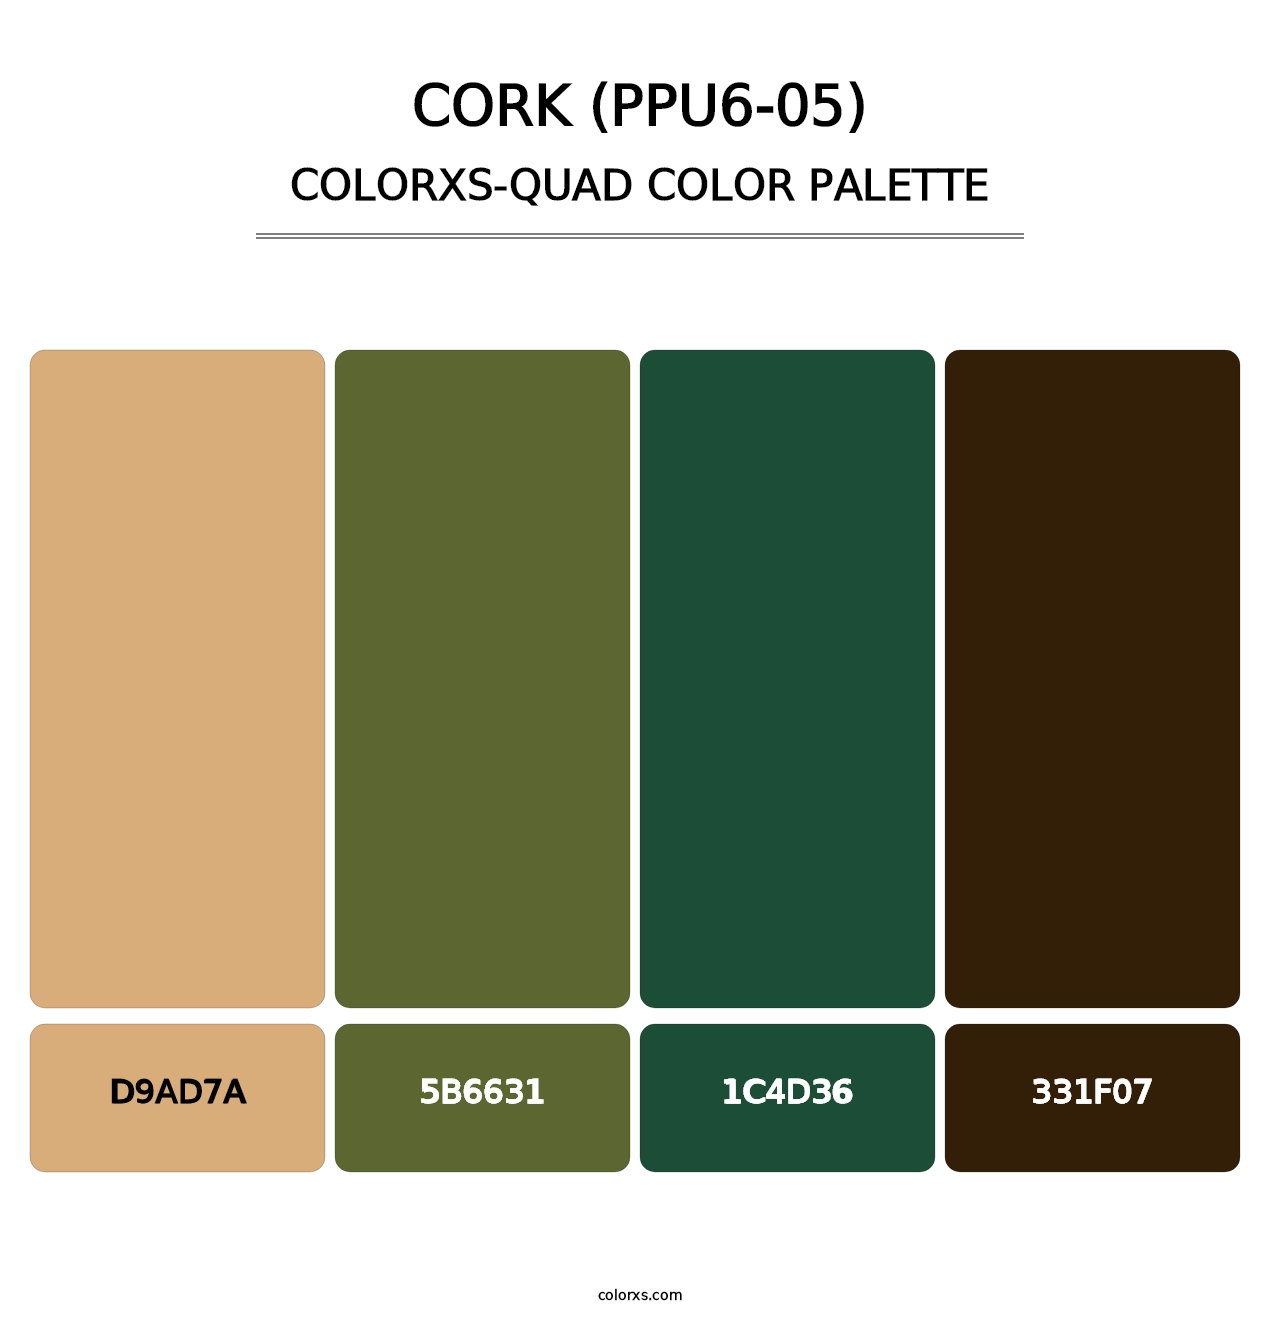 Cork (PPU6-05) - Colorxs Quad Palette